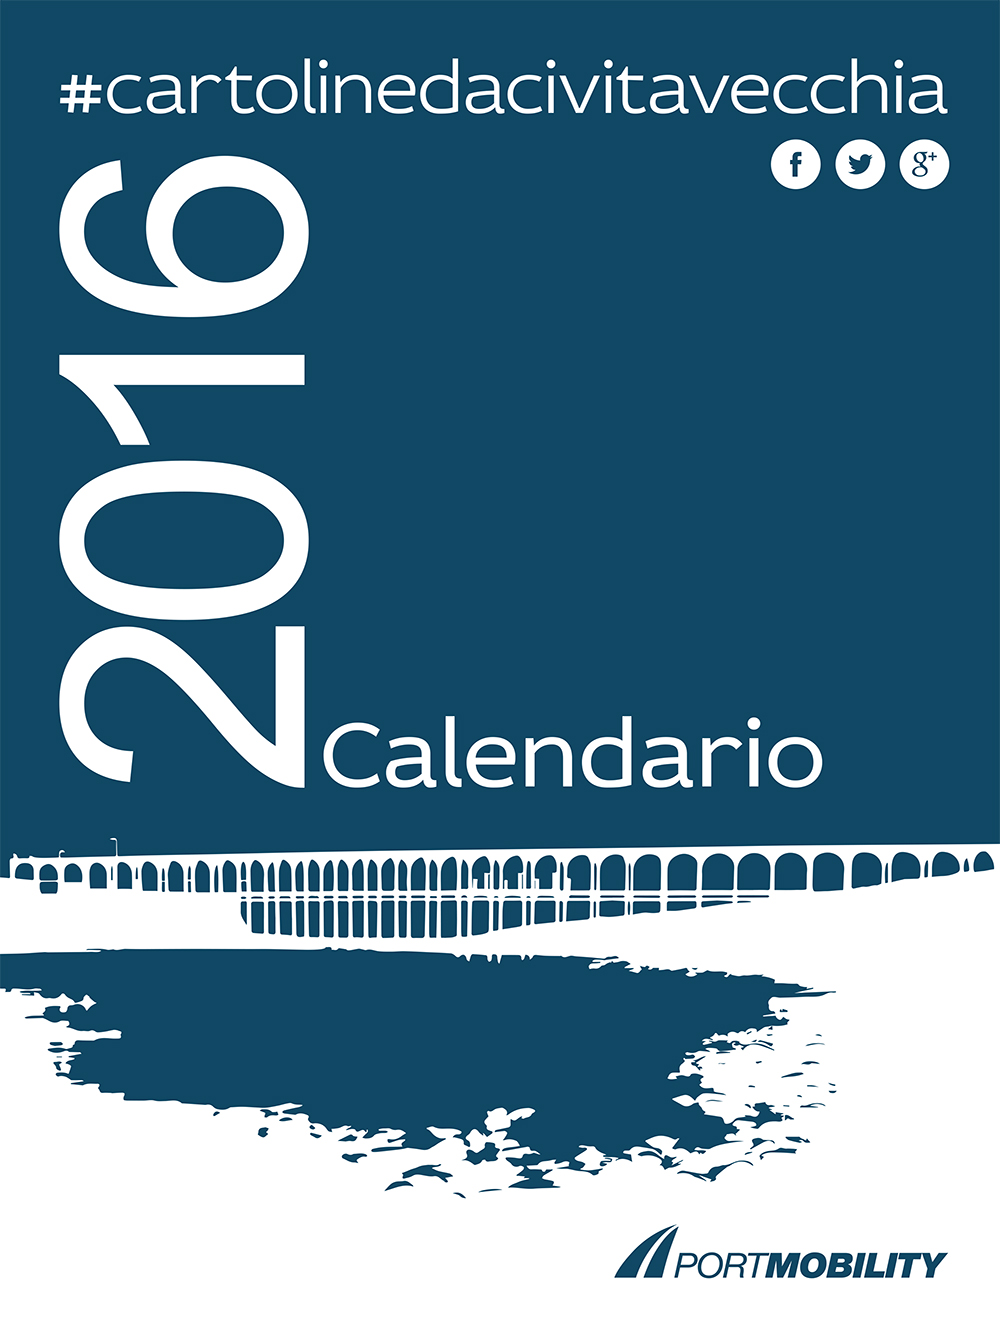 Cover of the Calendar 2016 of #postcardsfromcivitavecchia